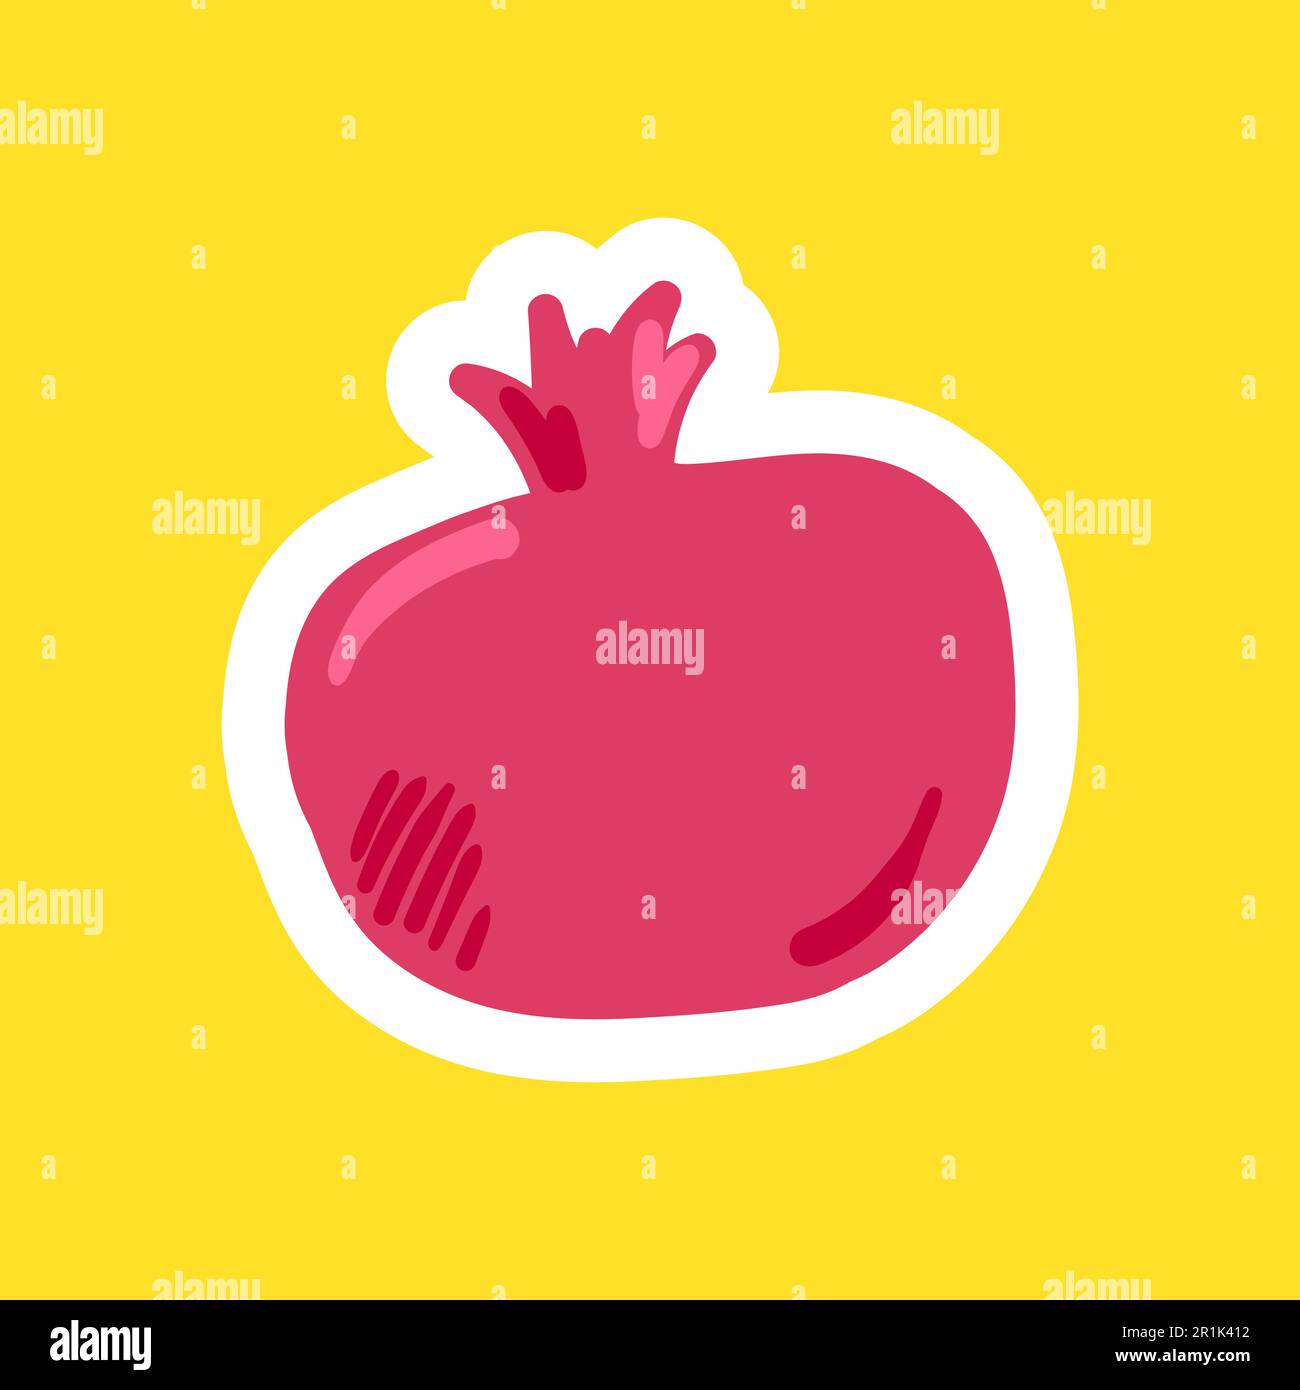 Granatapfelfrucht, flache Vektordarstellung. Exotische frische, tropische Früchte Cartoon-Clipart, Patch Stock Vektor